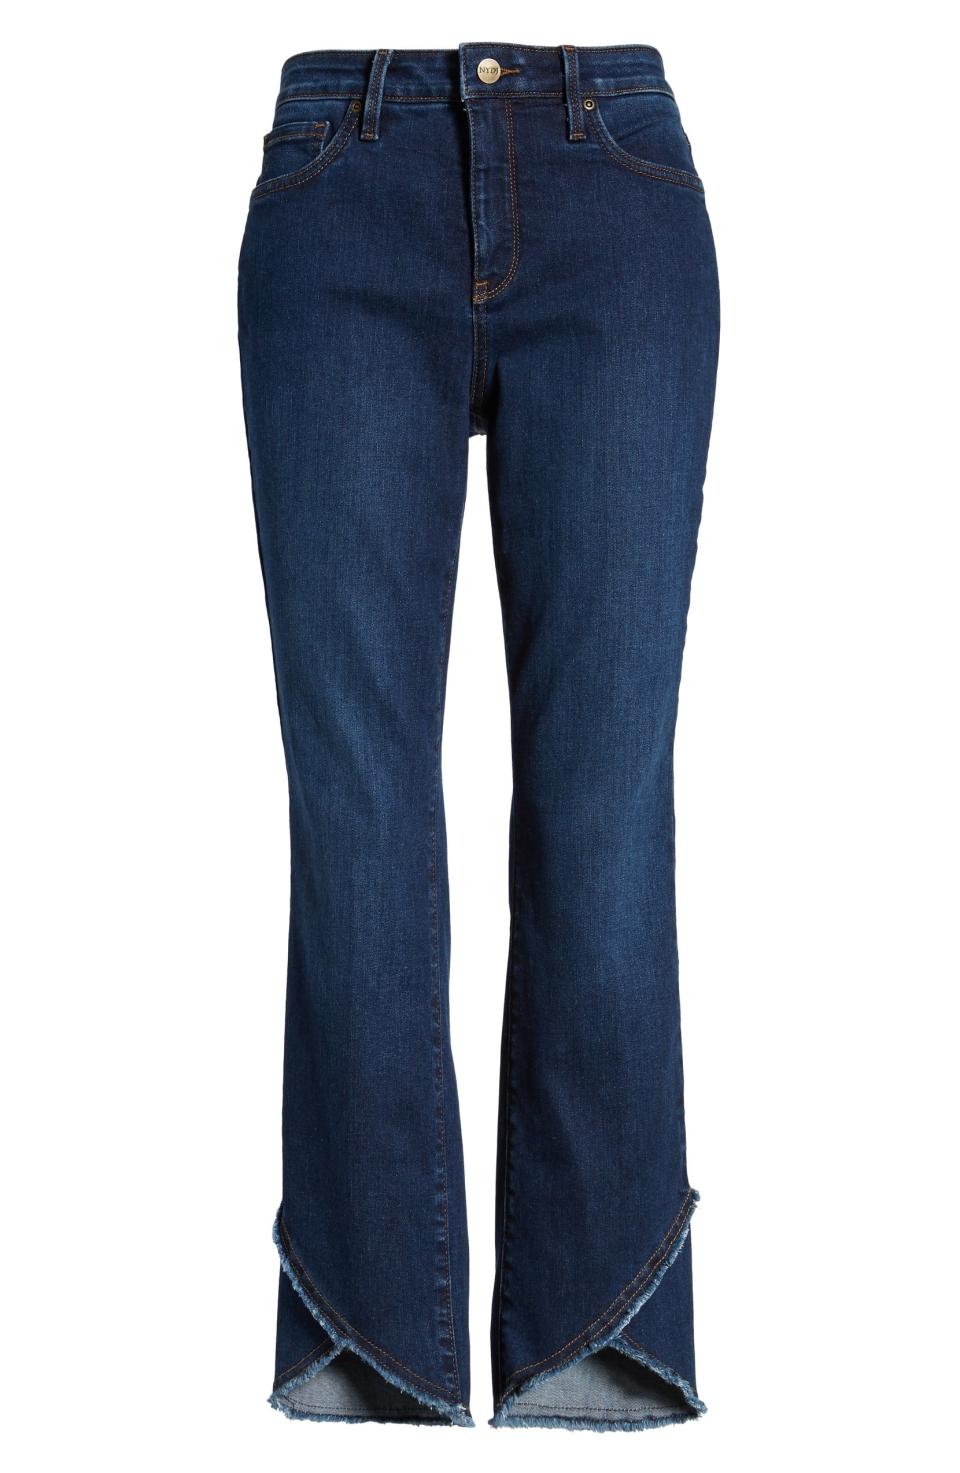 NYDJ Sheri Crisscross Hem Slim Ankle Jeans, $119 $78.90, Nordstrom